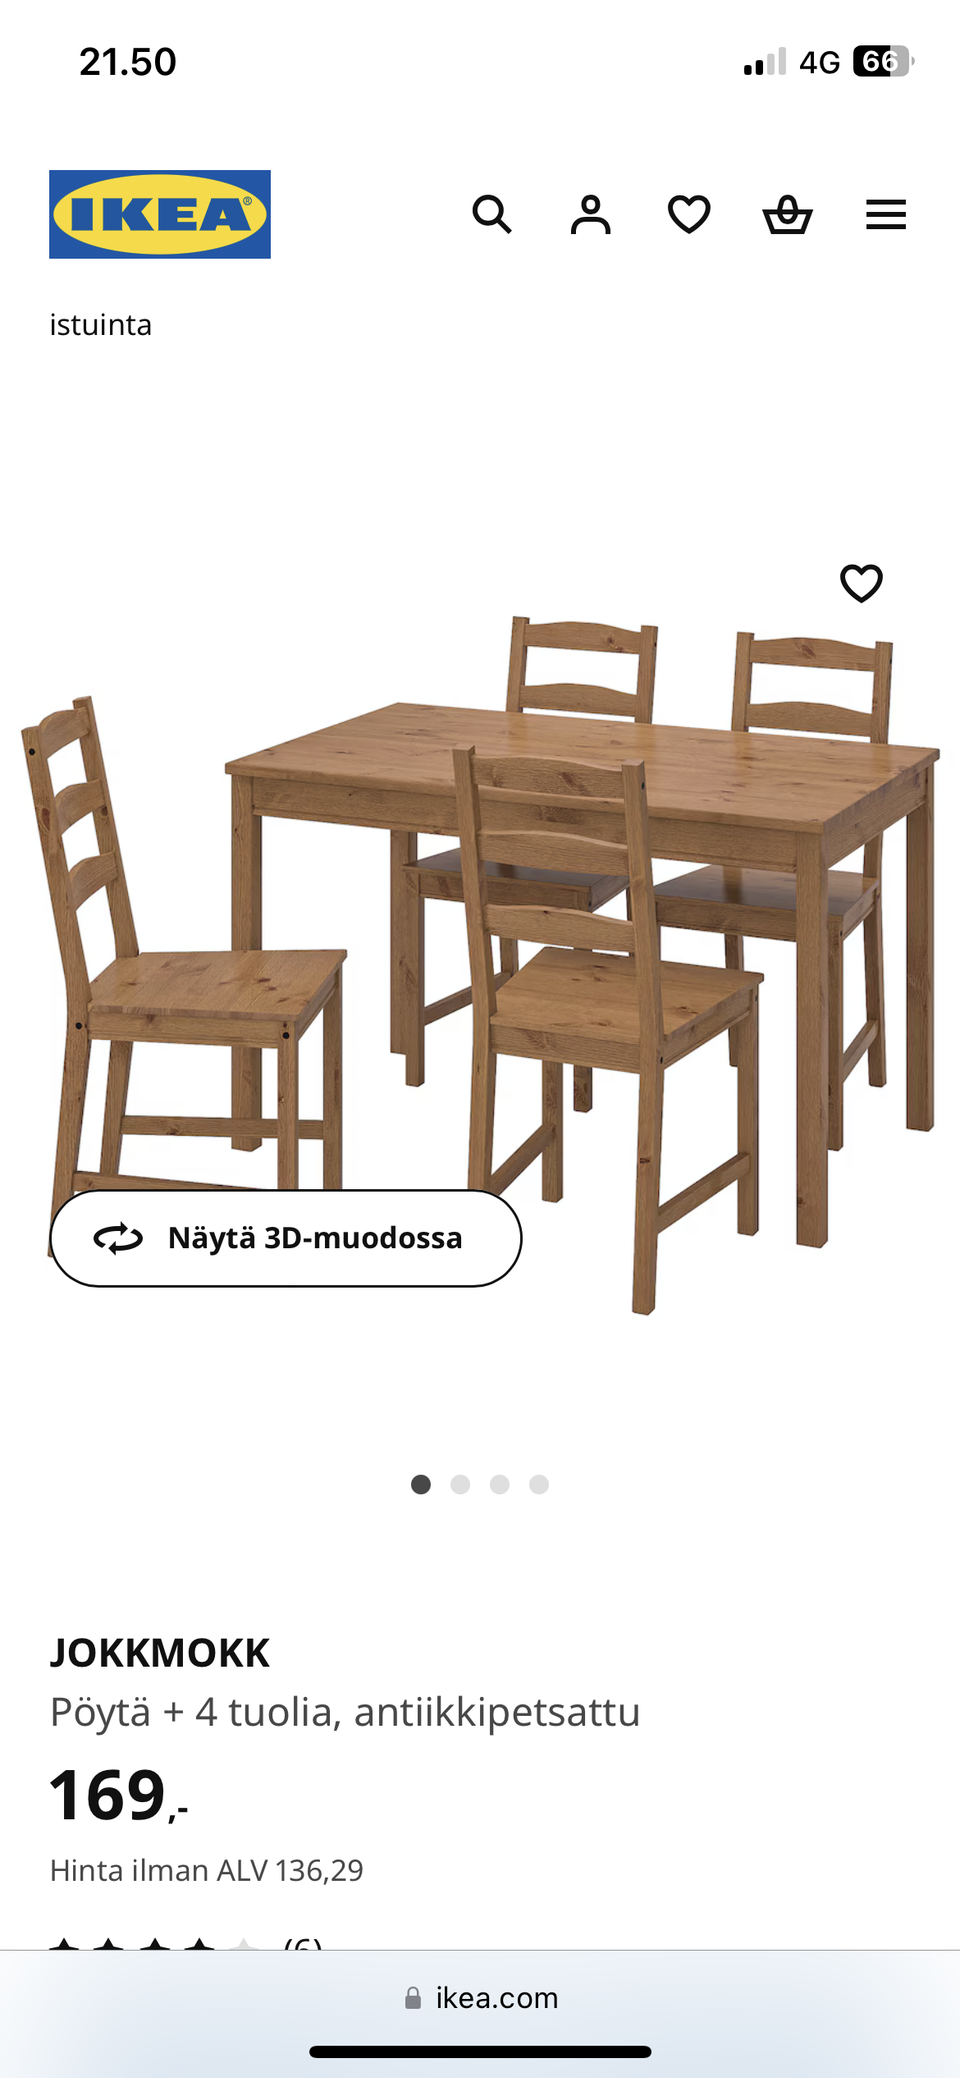 Ikean jokkmokk ruokaryhmä